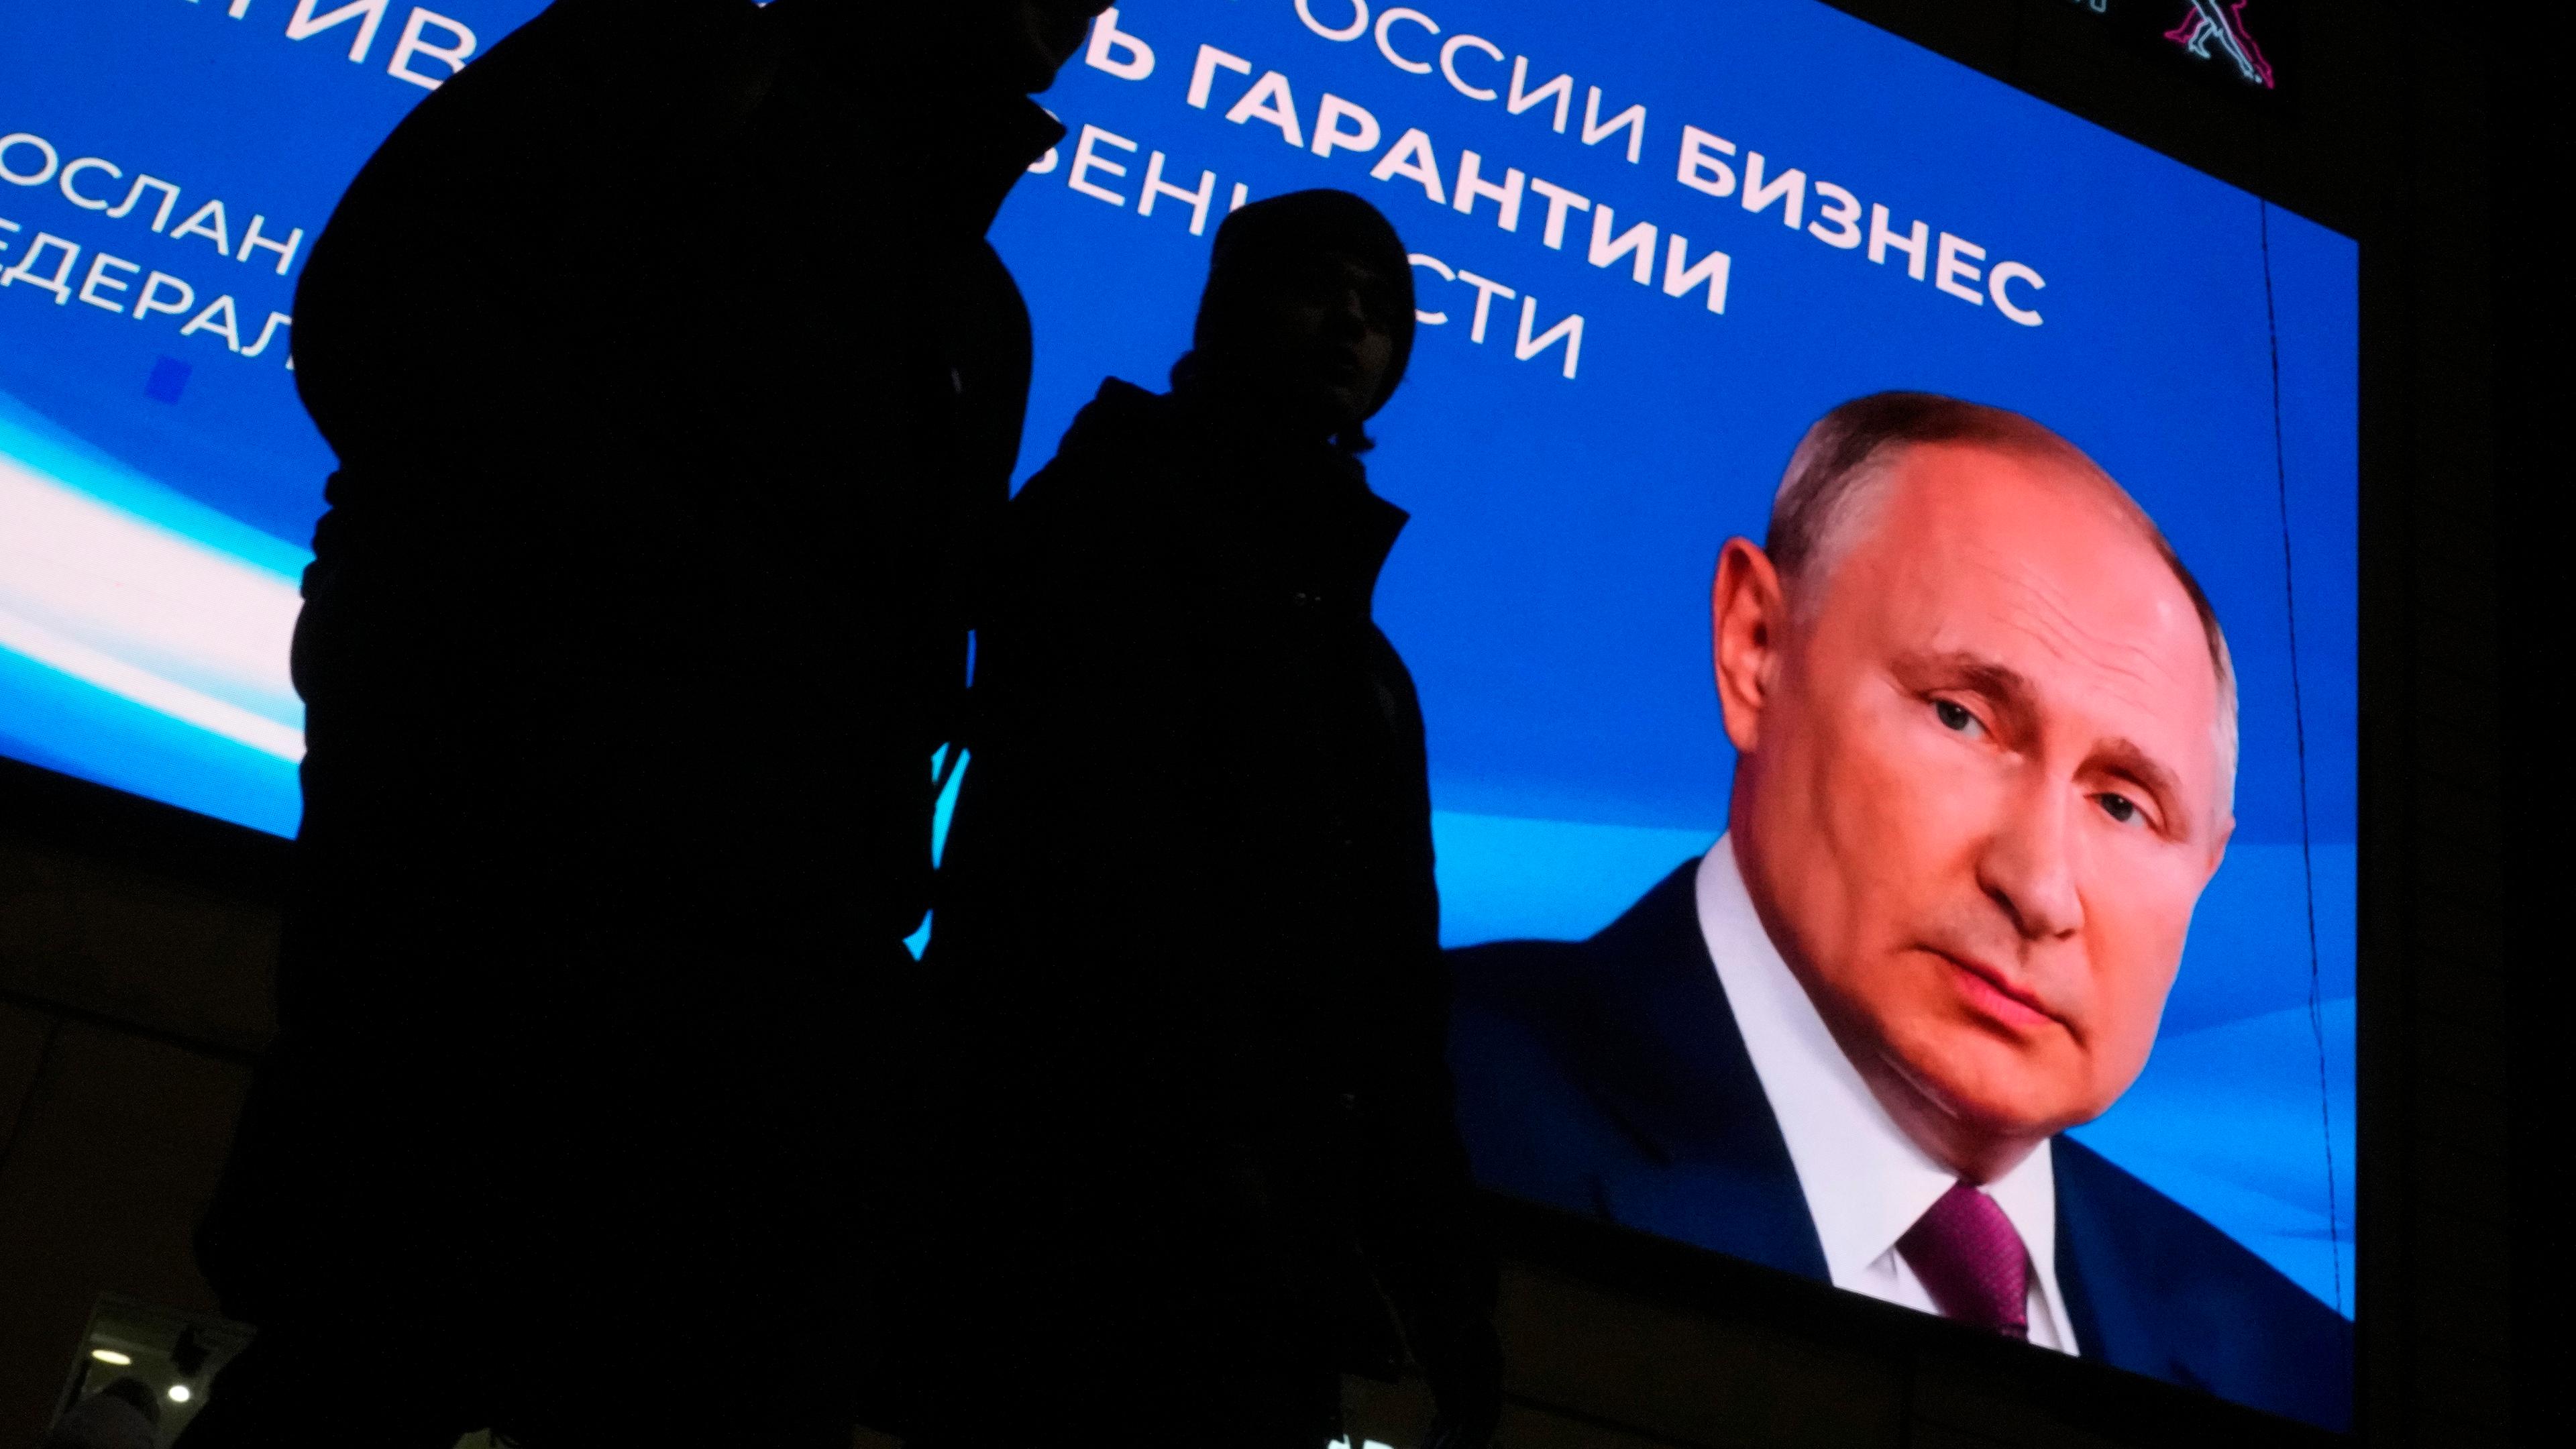 Beleuchtetes Wahlplakat von Putin im Hintergrund. Die Silhouetten von zwei Passanten im Vordergrund.